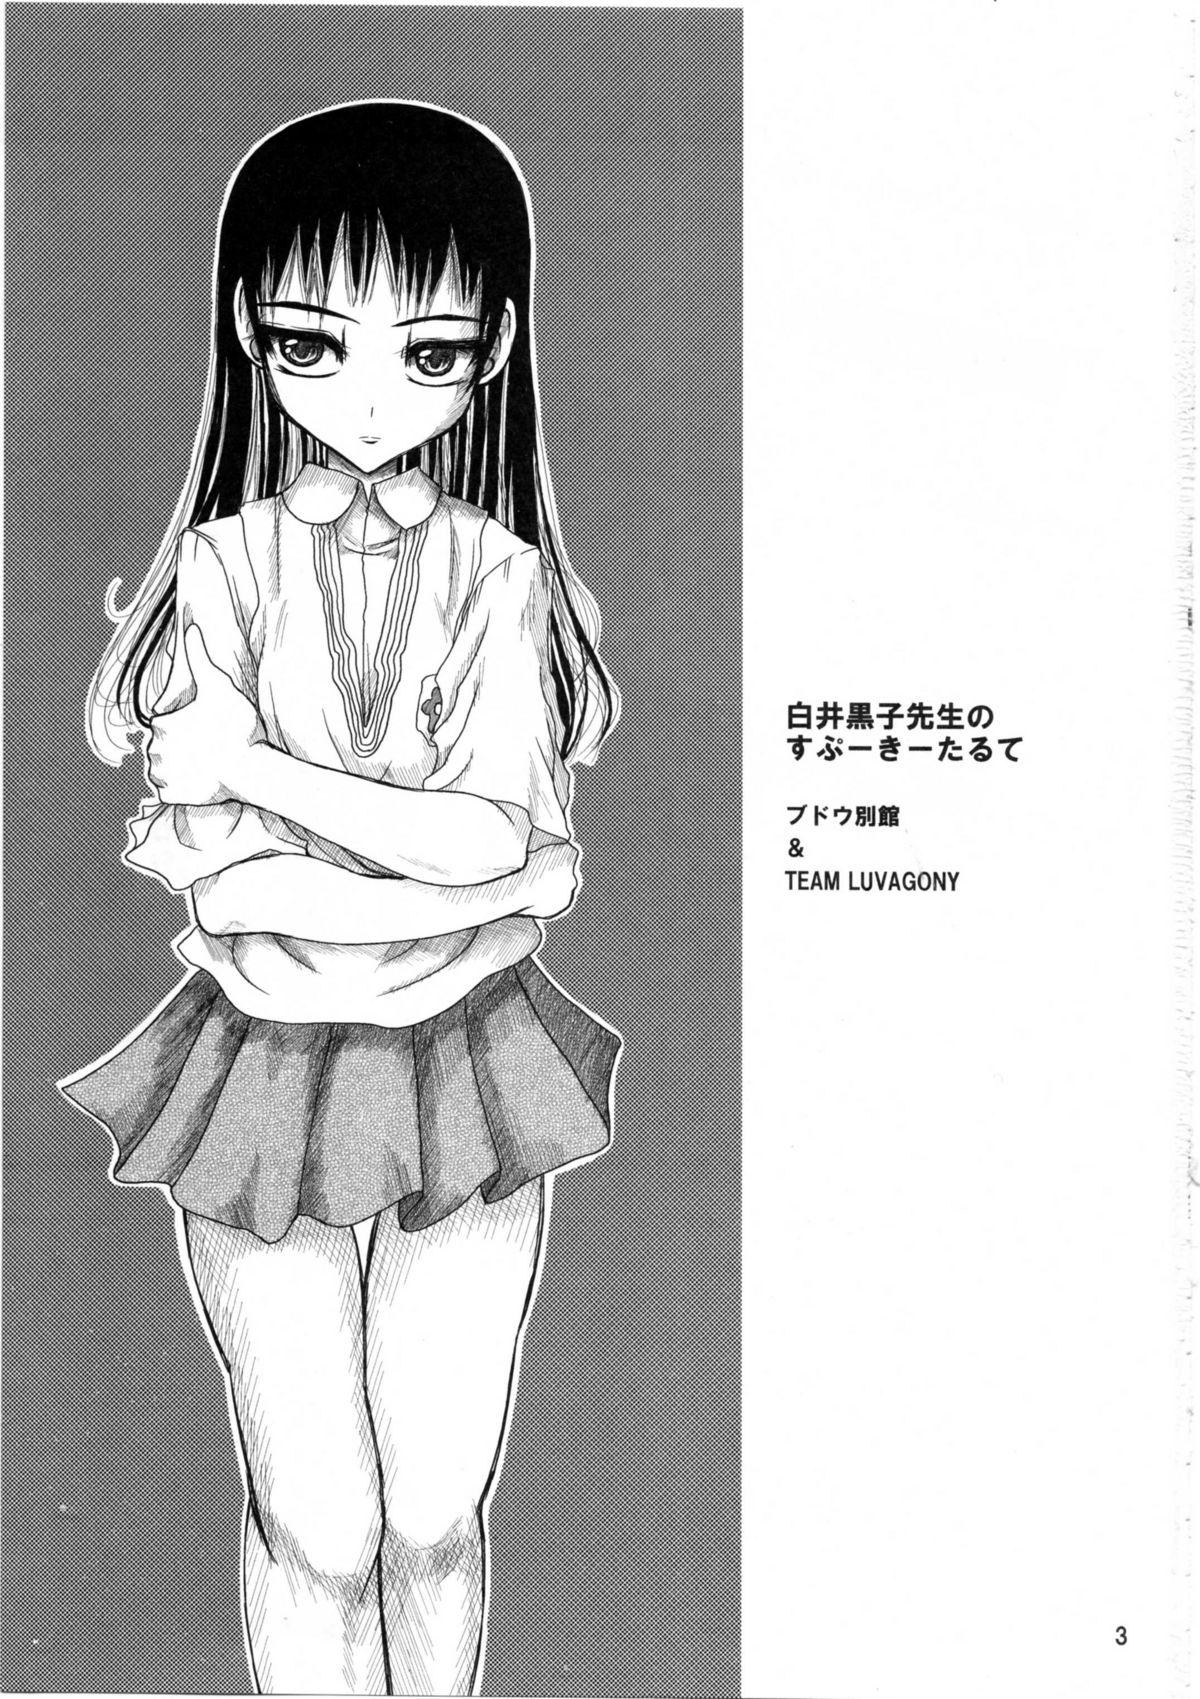 Dirty Shirai Kuroko Sensei no Spooky tarte - Toaru kagaku no railgun Real bout high school Analfucking - Page 2